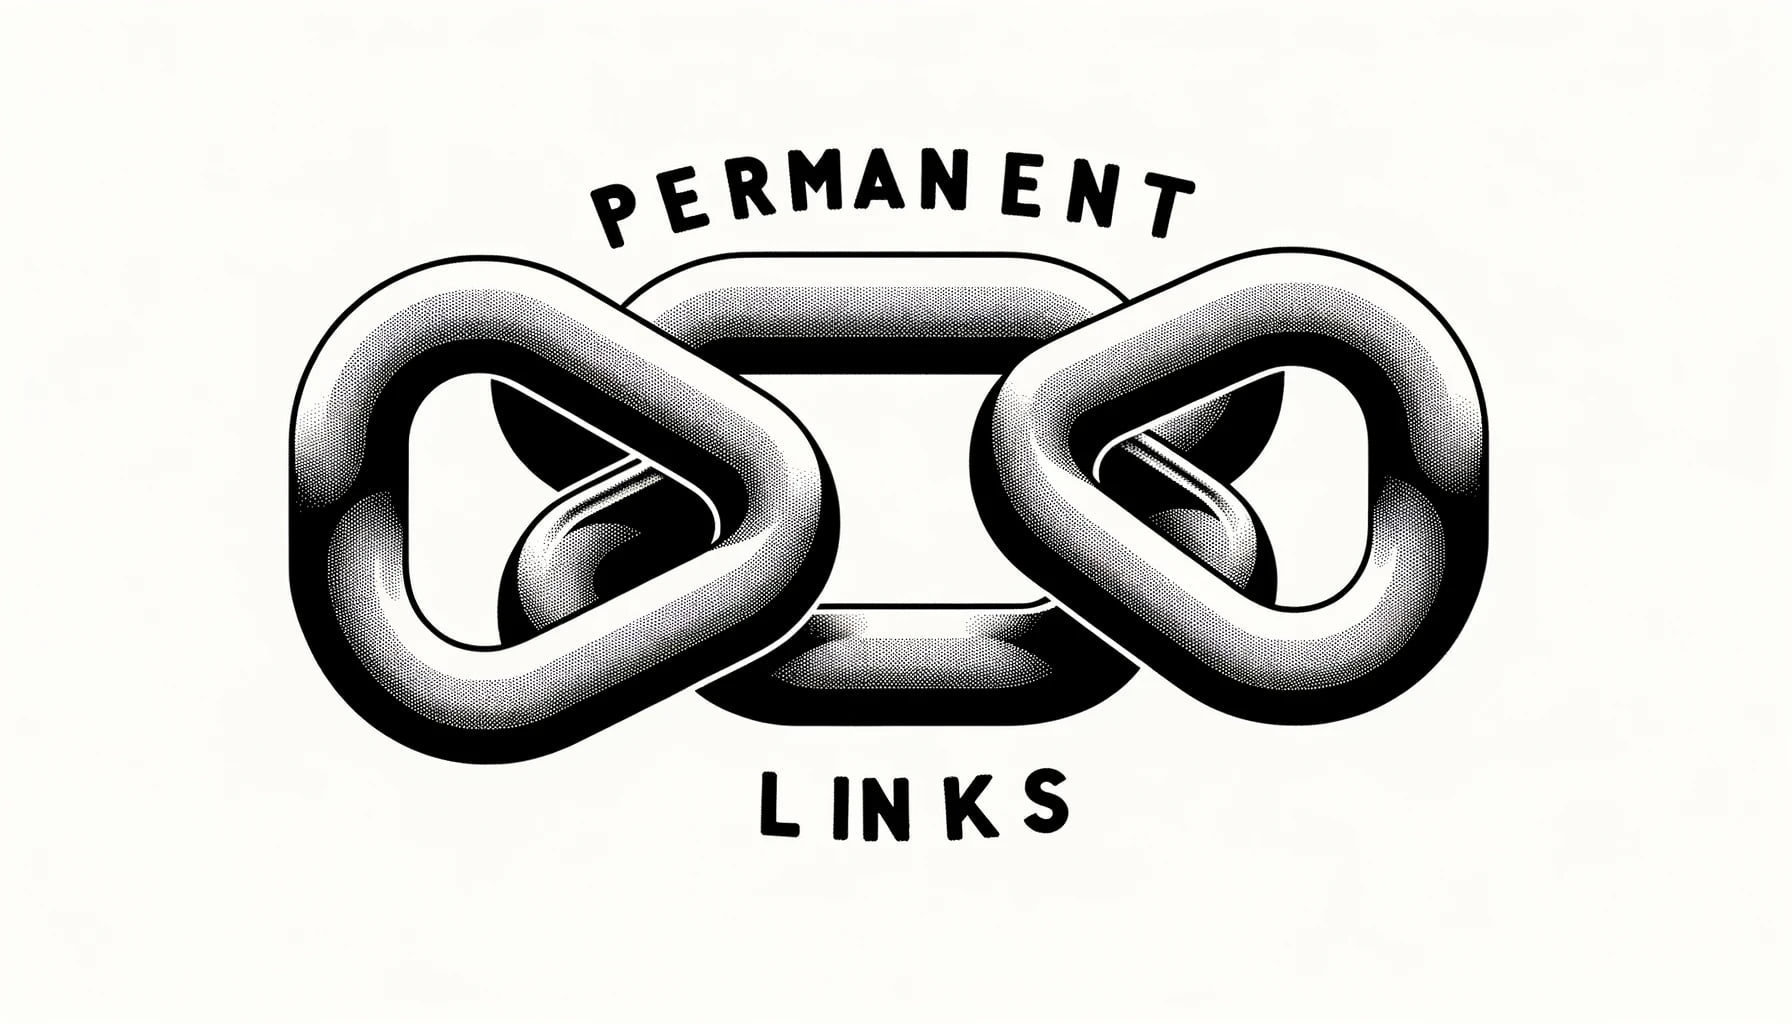 : Illustration von zwei ineinandergreifenden Kettenringen mit dem Schriftzug "PERMANENT LINKS" im Hintergrund